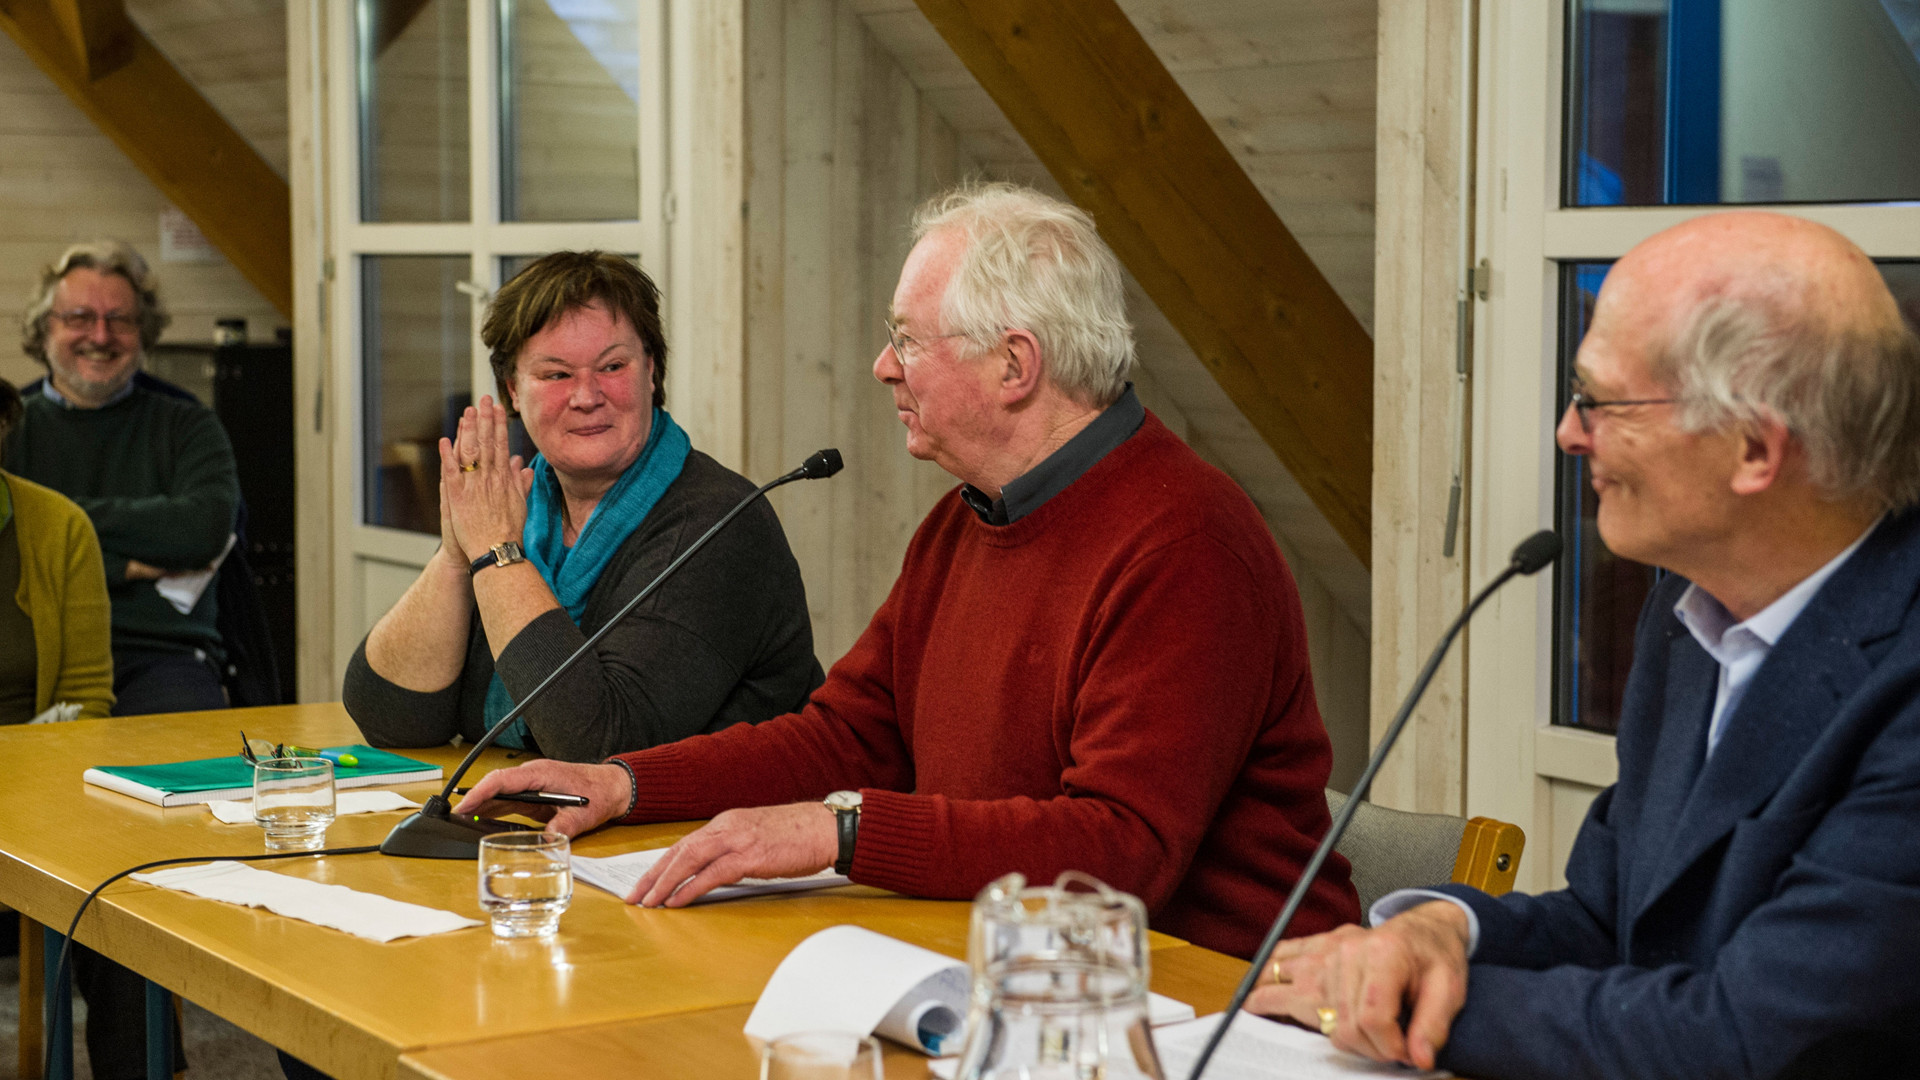 Monika Schmid, Fulbert Steffensky und Erwin Koller an einer Tagung 2015 in Luzern.